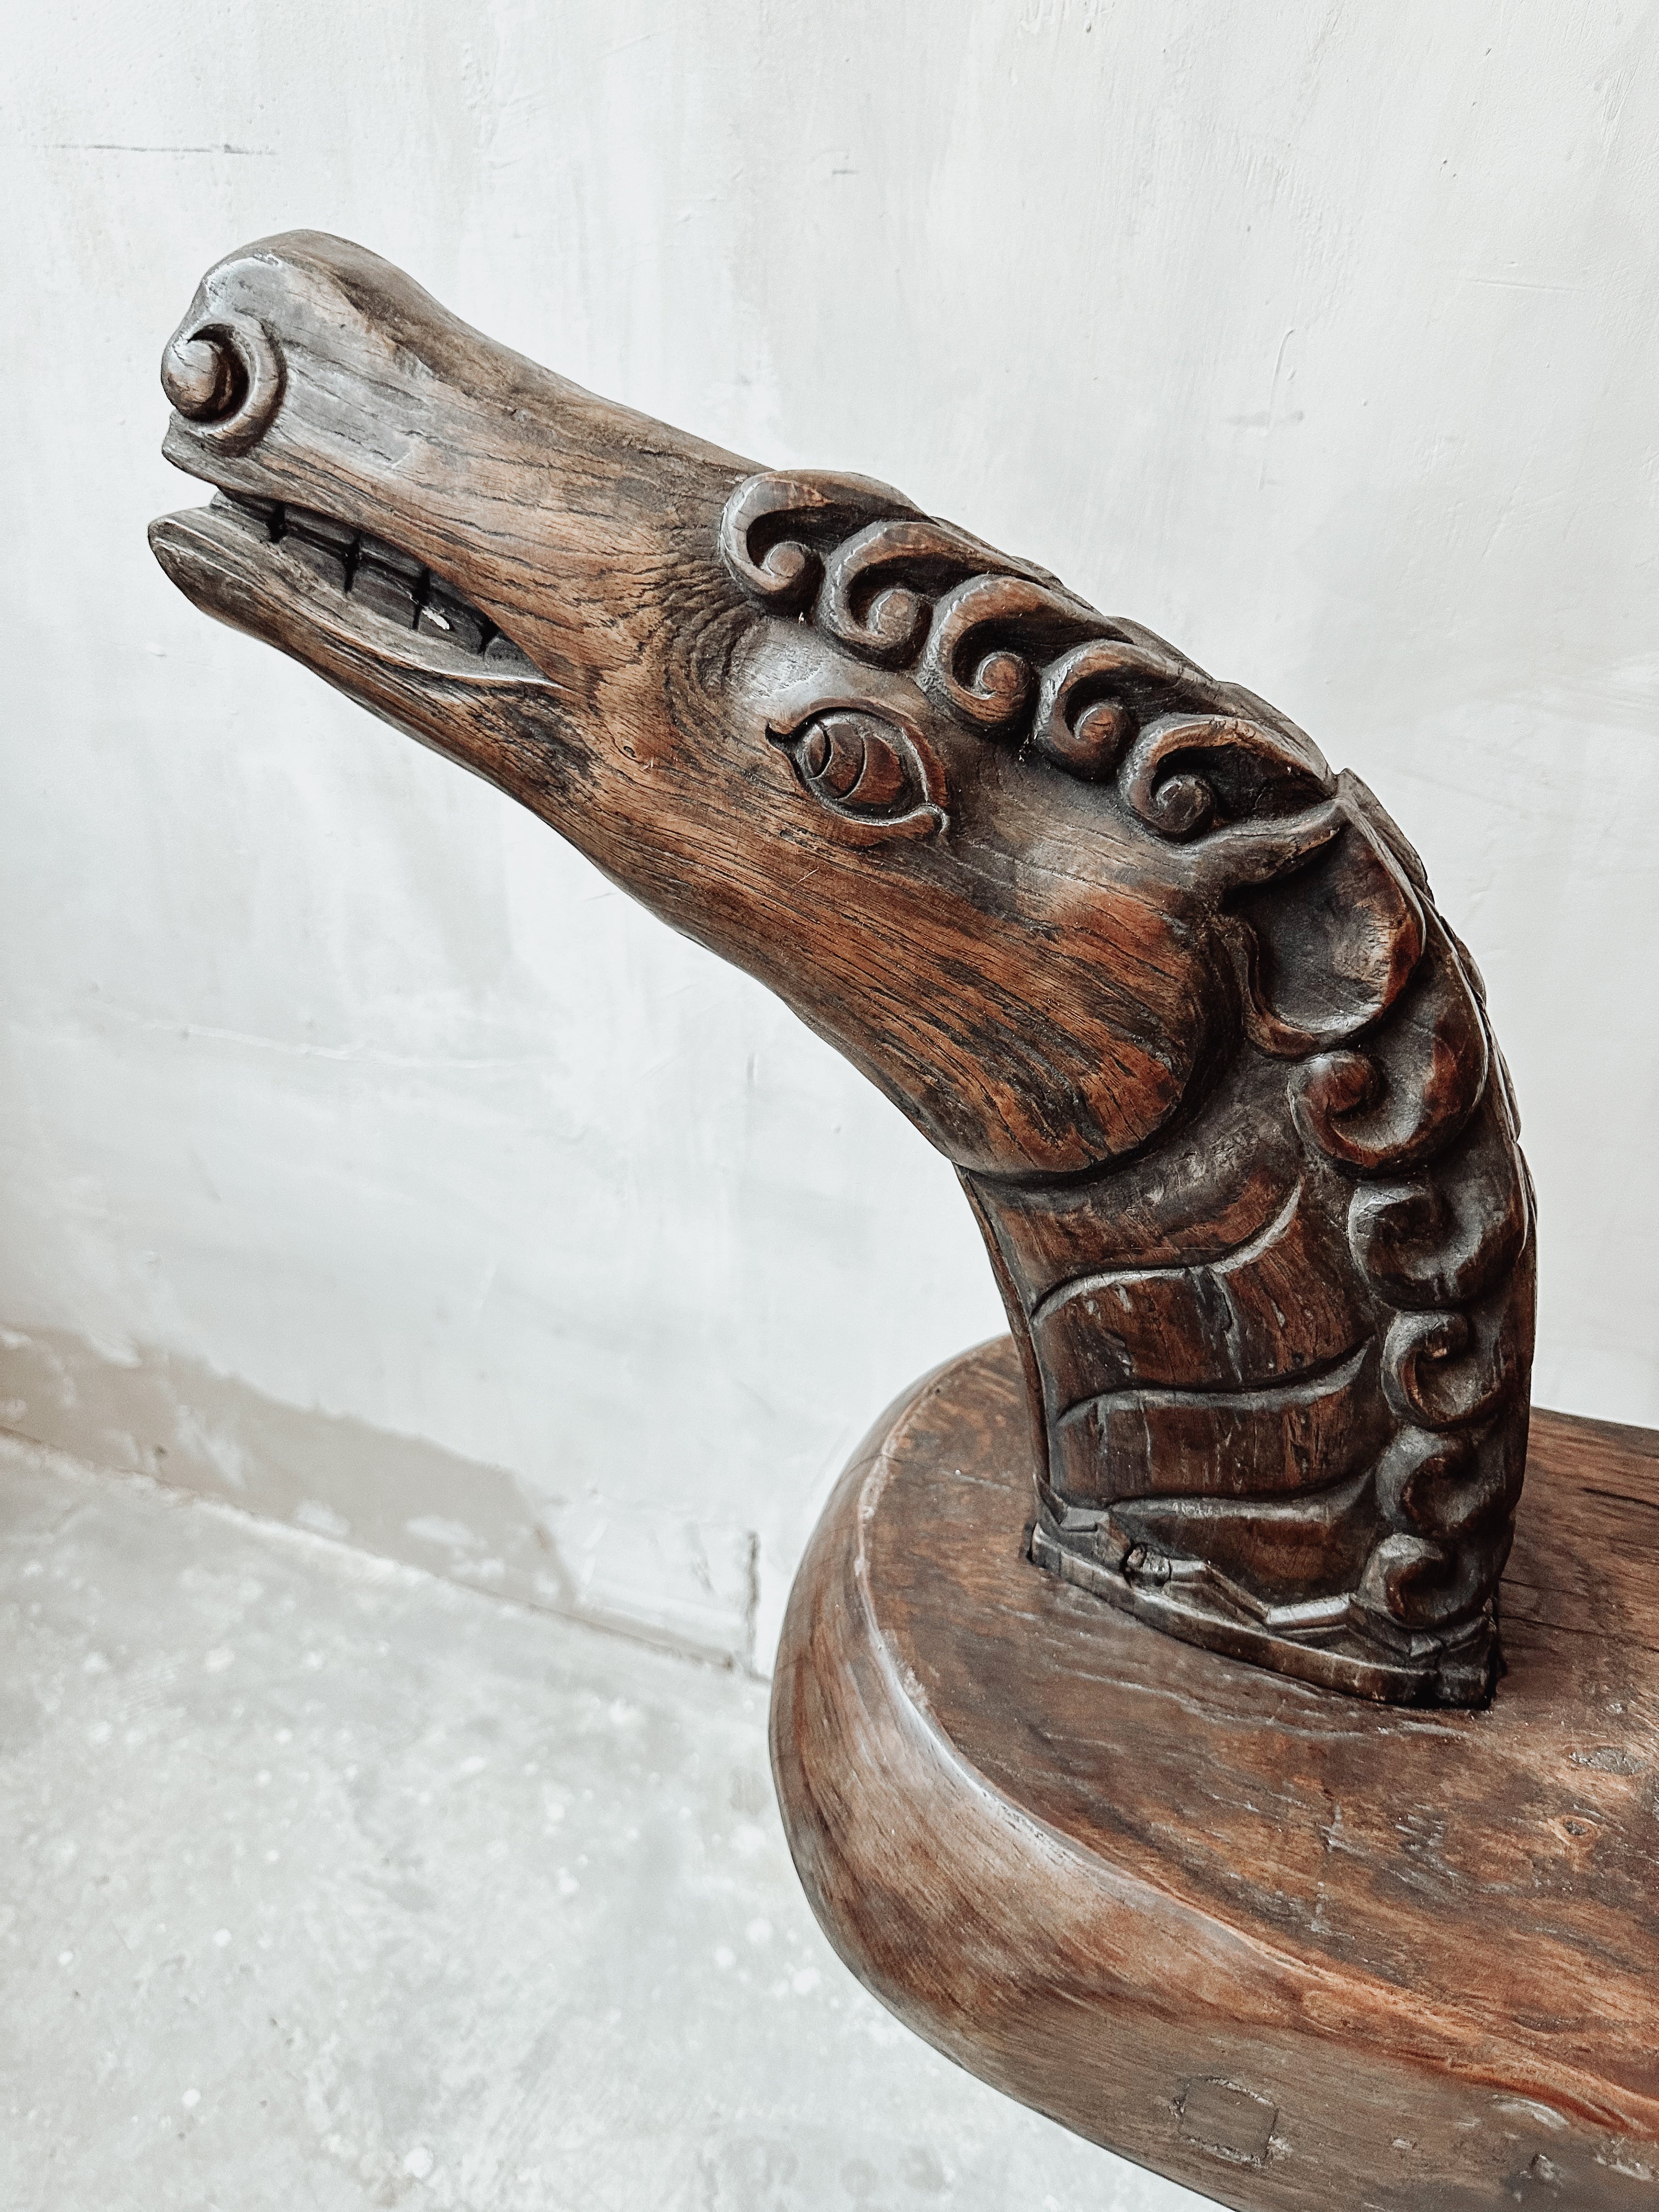 The antique Sumba horse